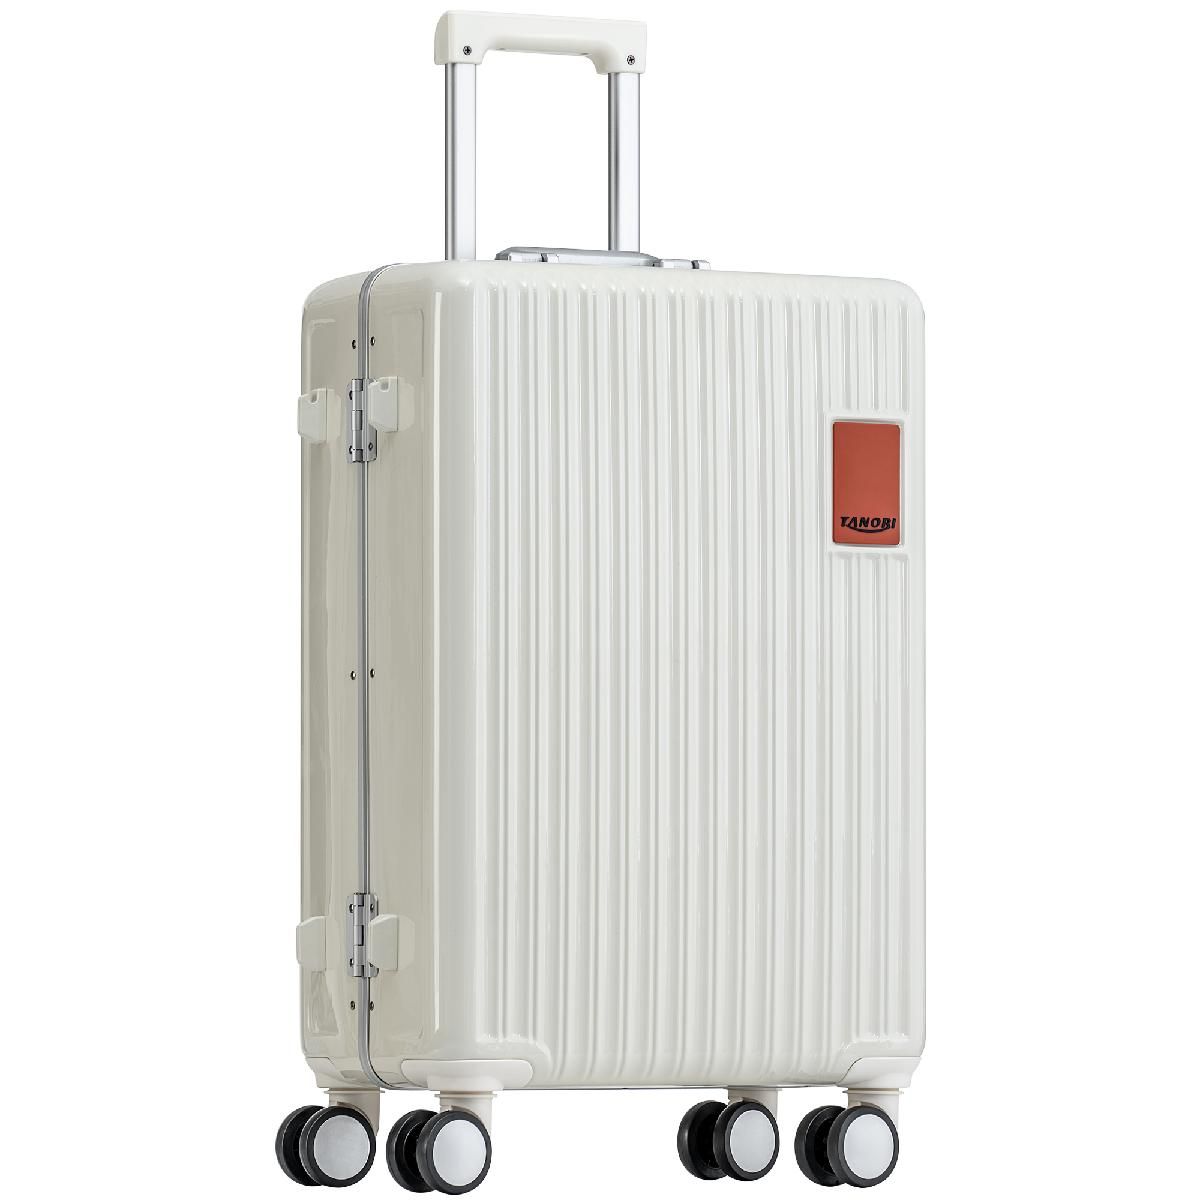 Sサイズ 機内持ち込み スーツケース キャリーバッグ キャリーケースかわいい フレーム TSAロック搭載 軽量 1日 2日 Ivory ABS+PC